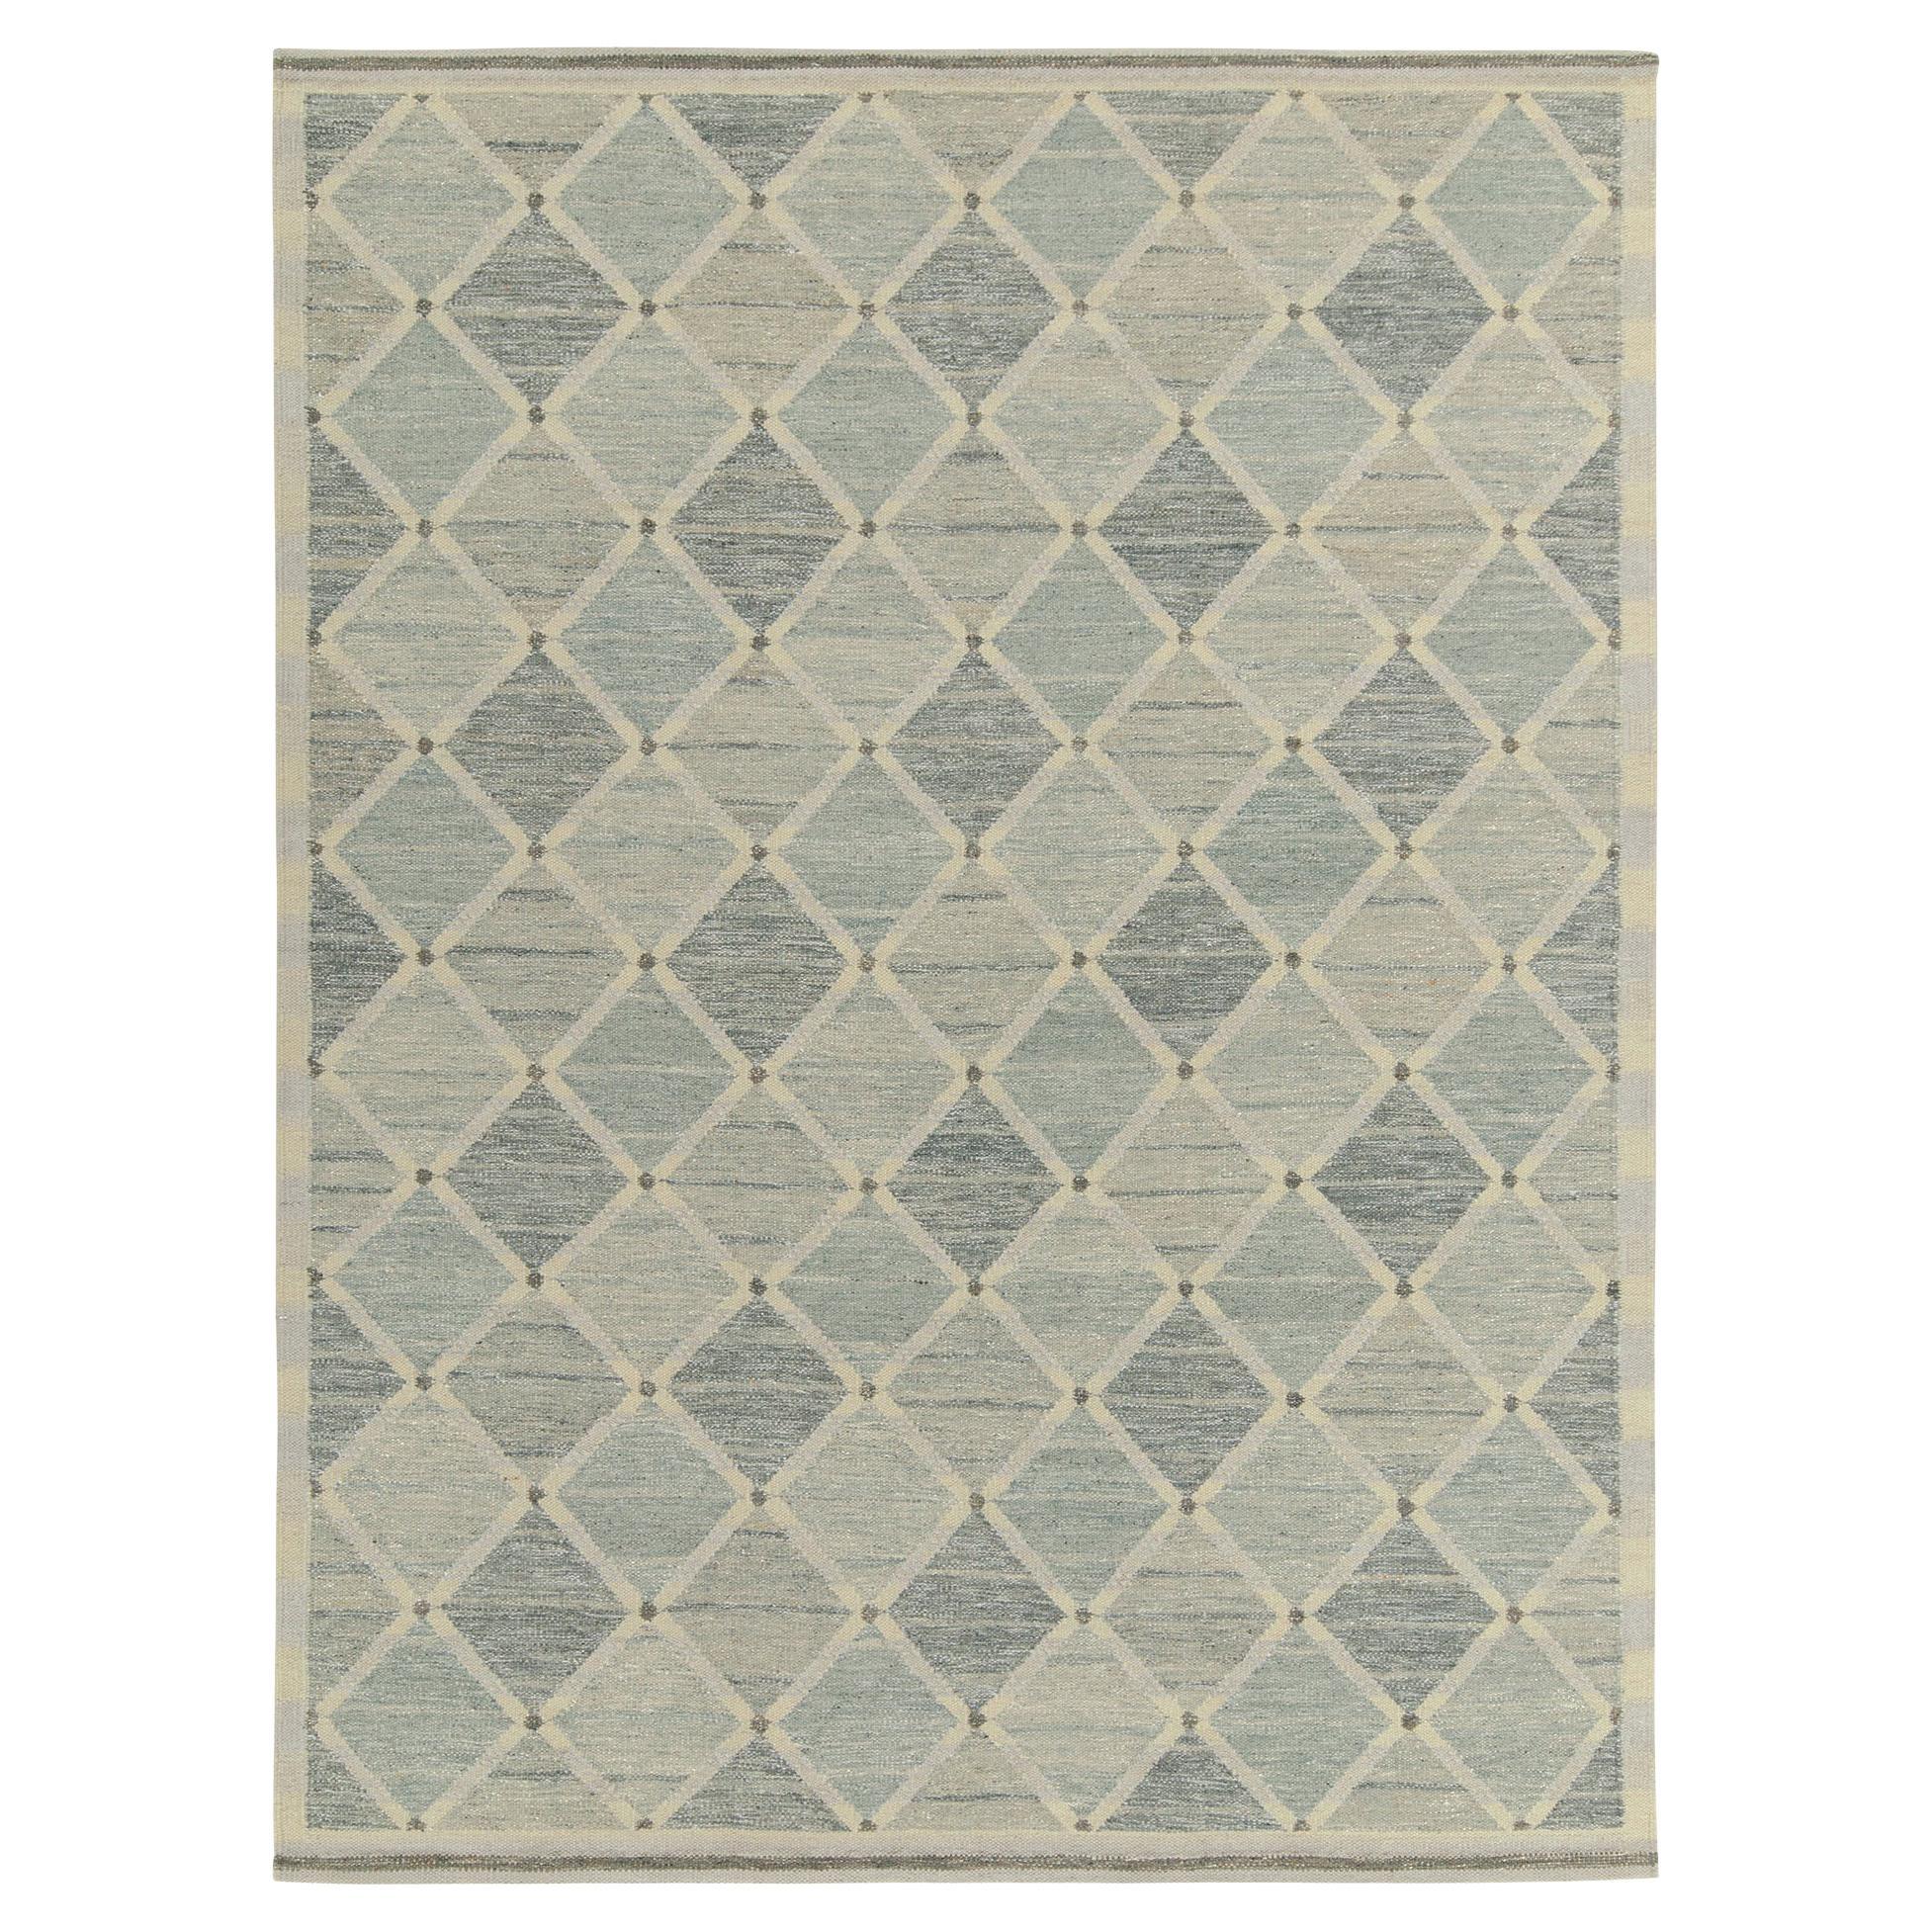 Teppich & Kelim-Teppich im skandinavischen Stil in Grau & Blau mit geometrischem Muster